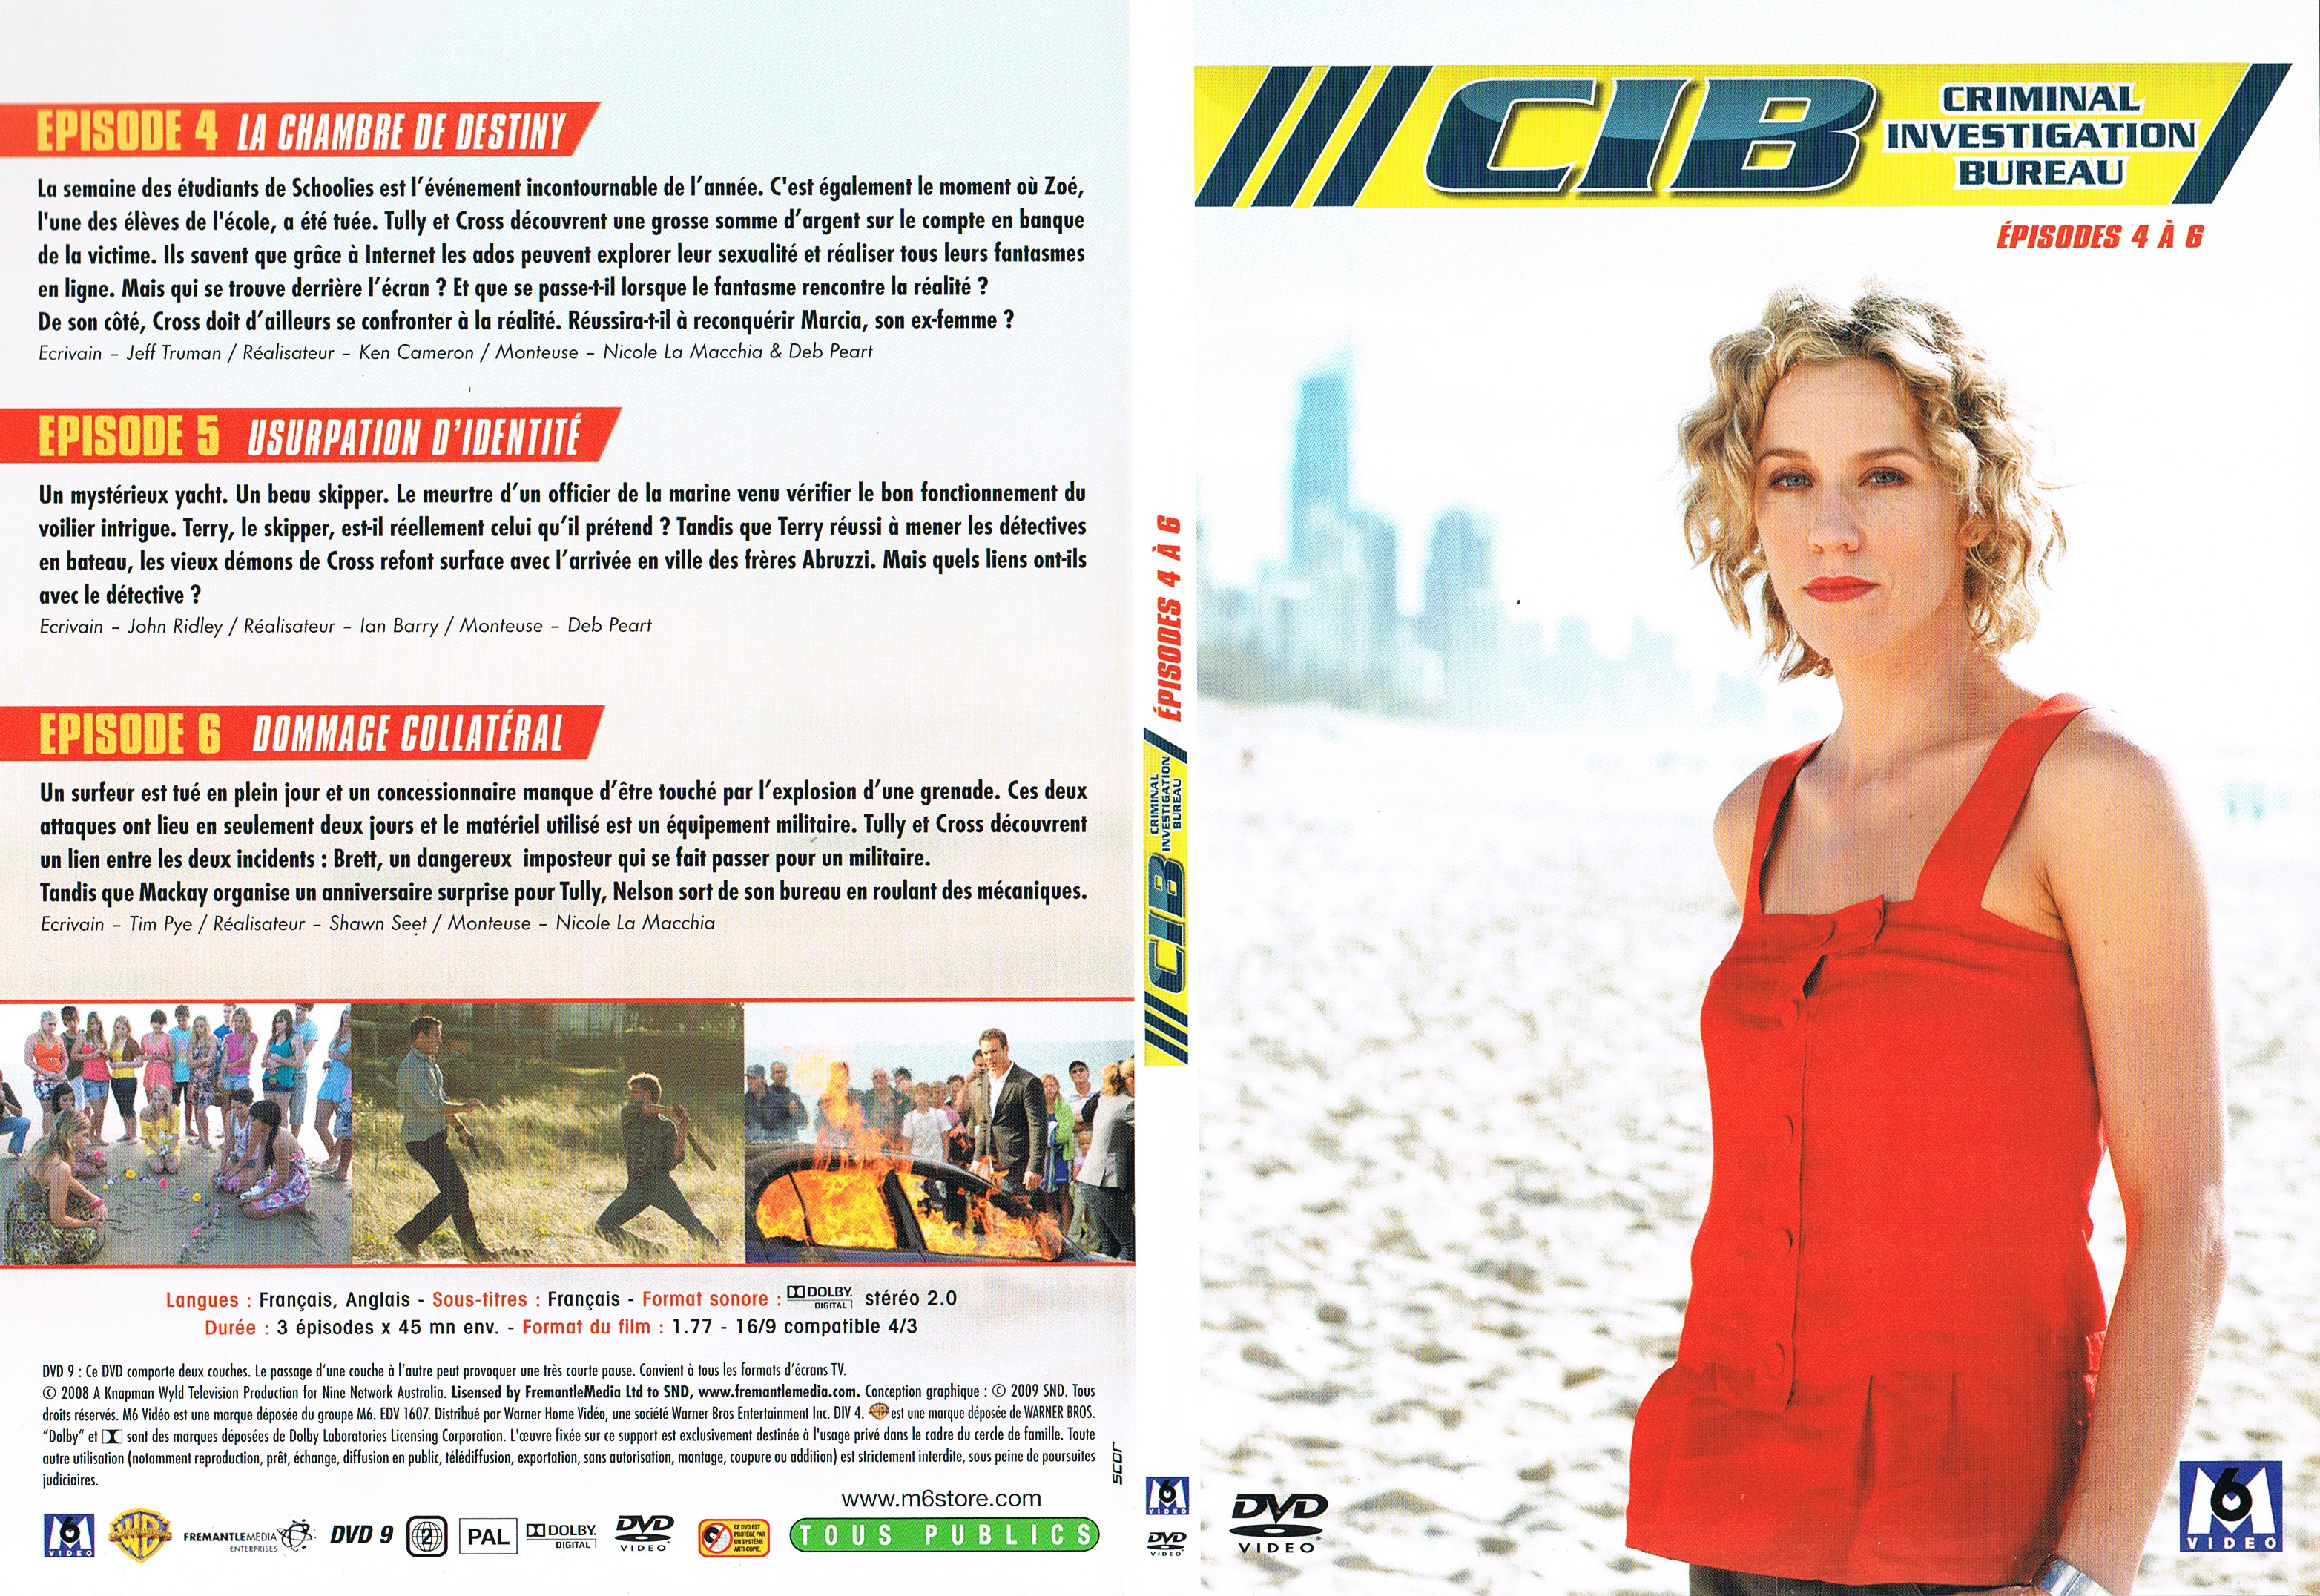 Jaquette DVD CIB Criminal Investigation Bureau Saison 1 DVD 2